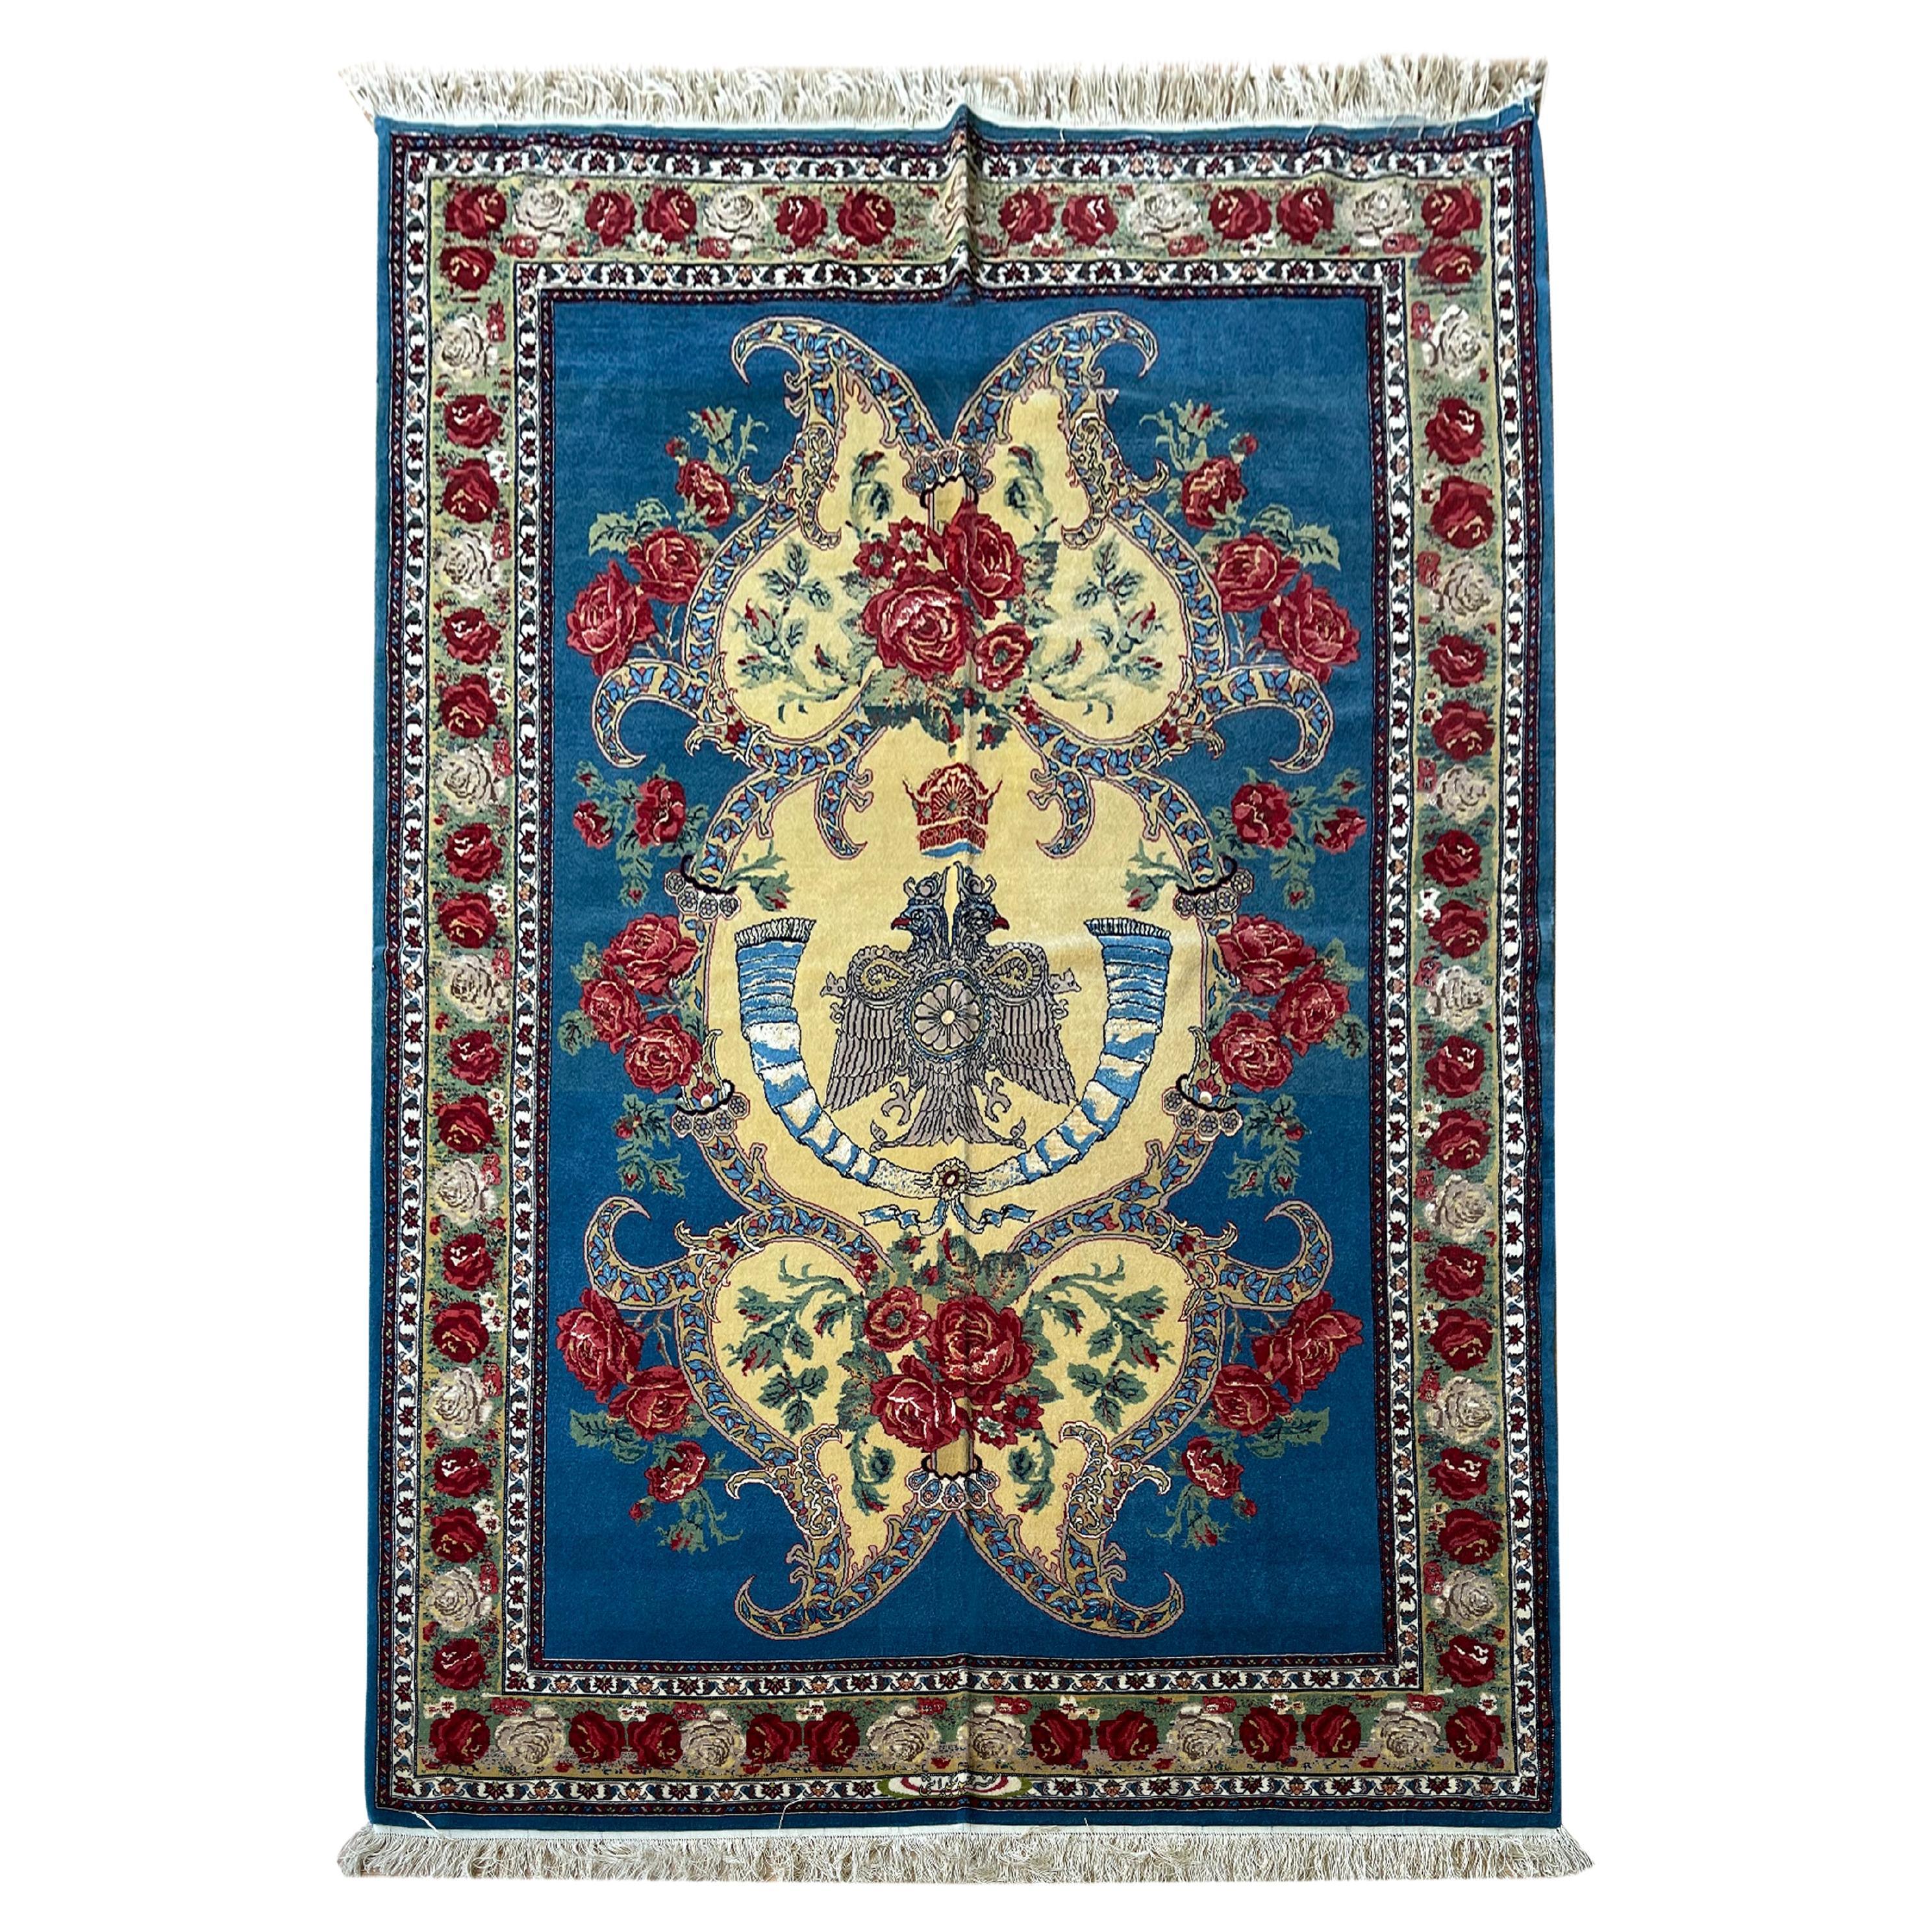 Tapis à fleurs exclusif, tapis bleu en soie tissé à la main, tapis oriental kurde symbolique en vente